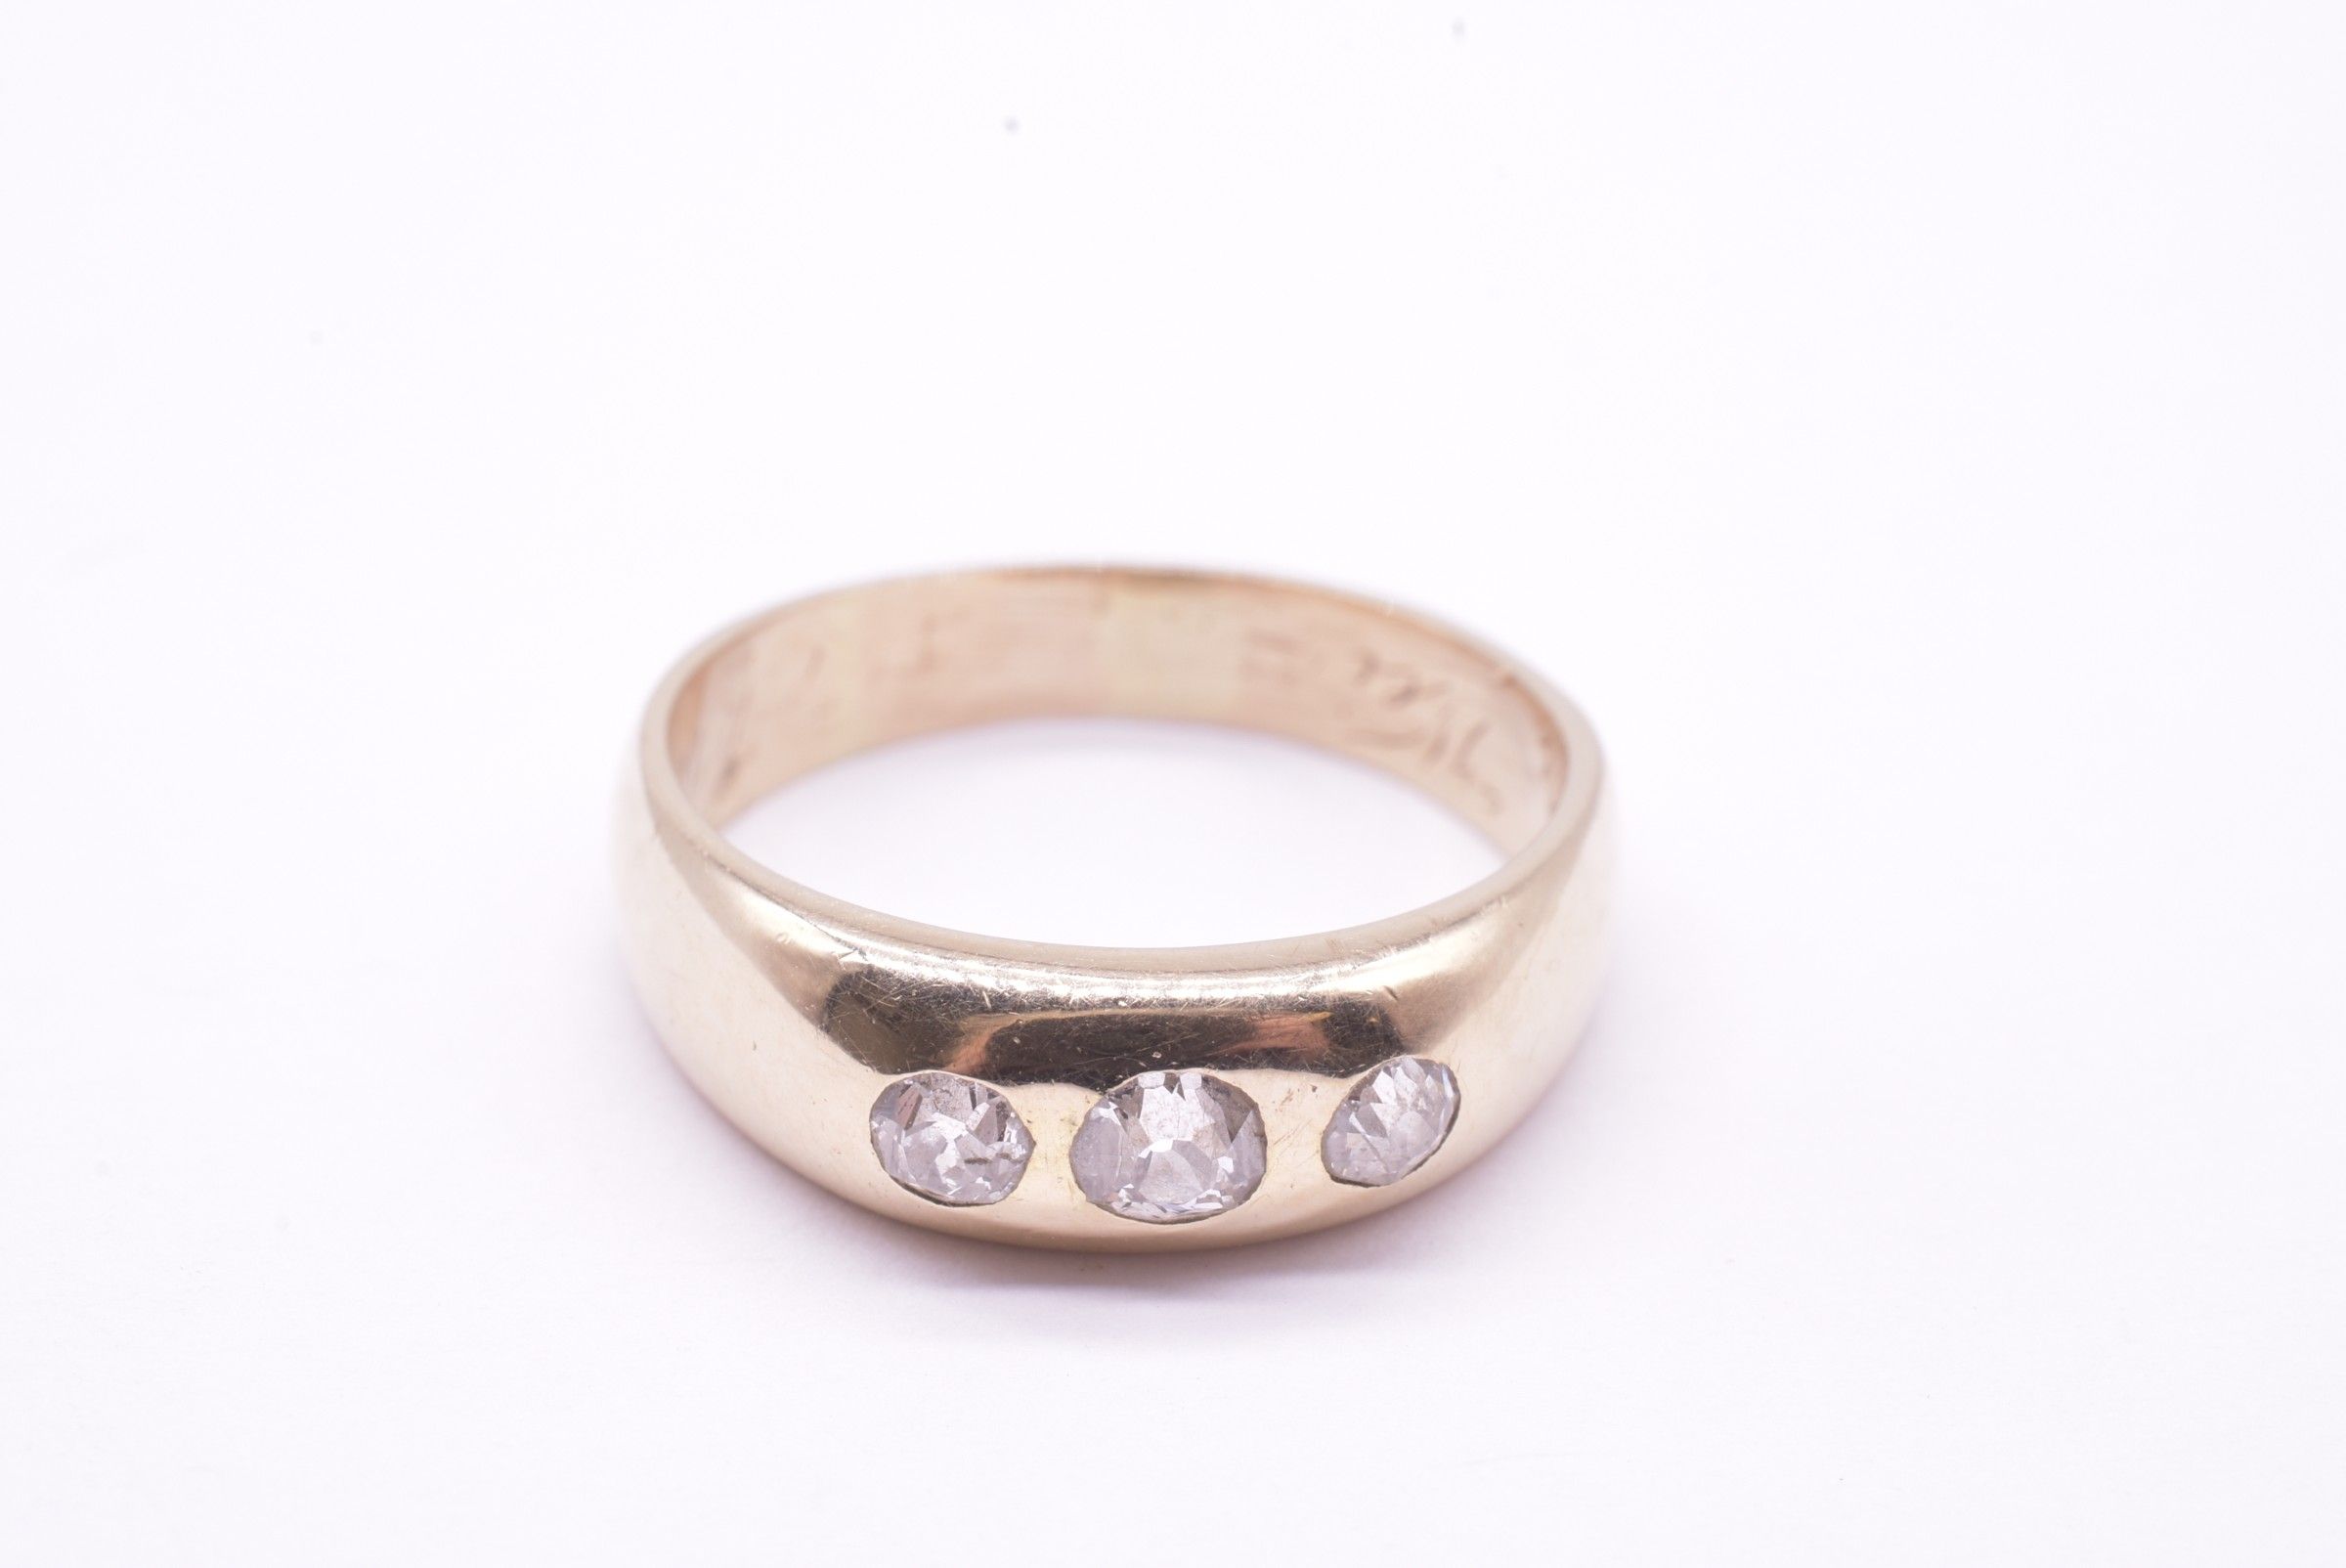 18 Karat Gypsy Ring w 3 Round Diamonds, dated 1909